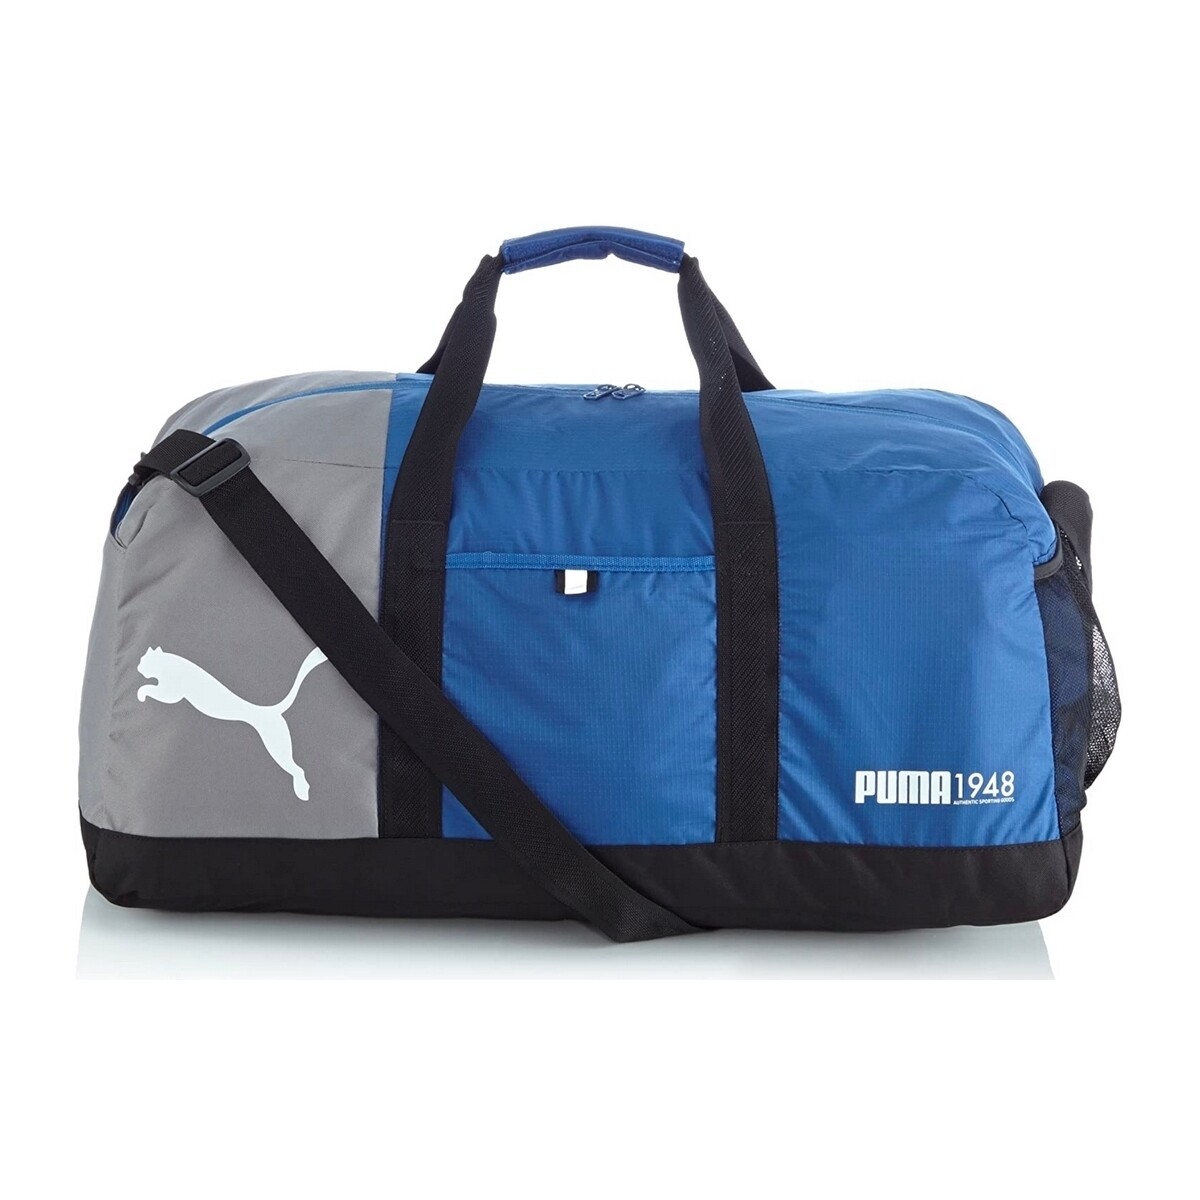 Taschen Sporttaschen Puma 072575 Blau